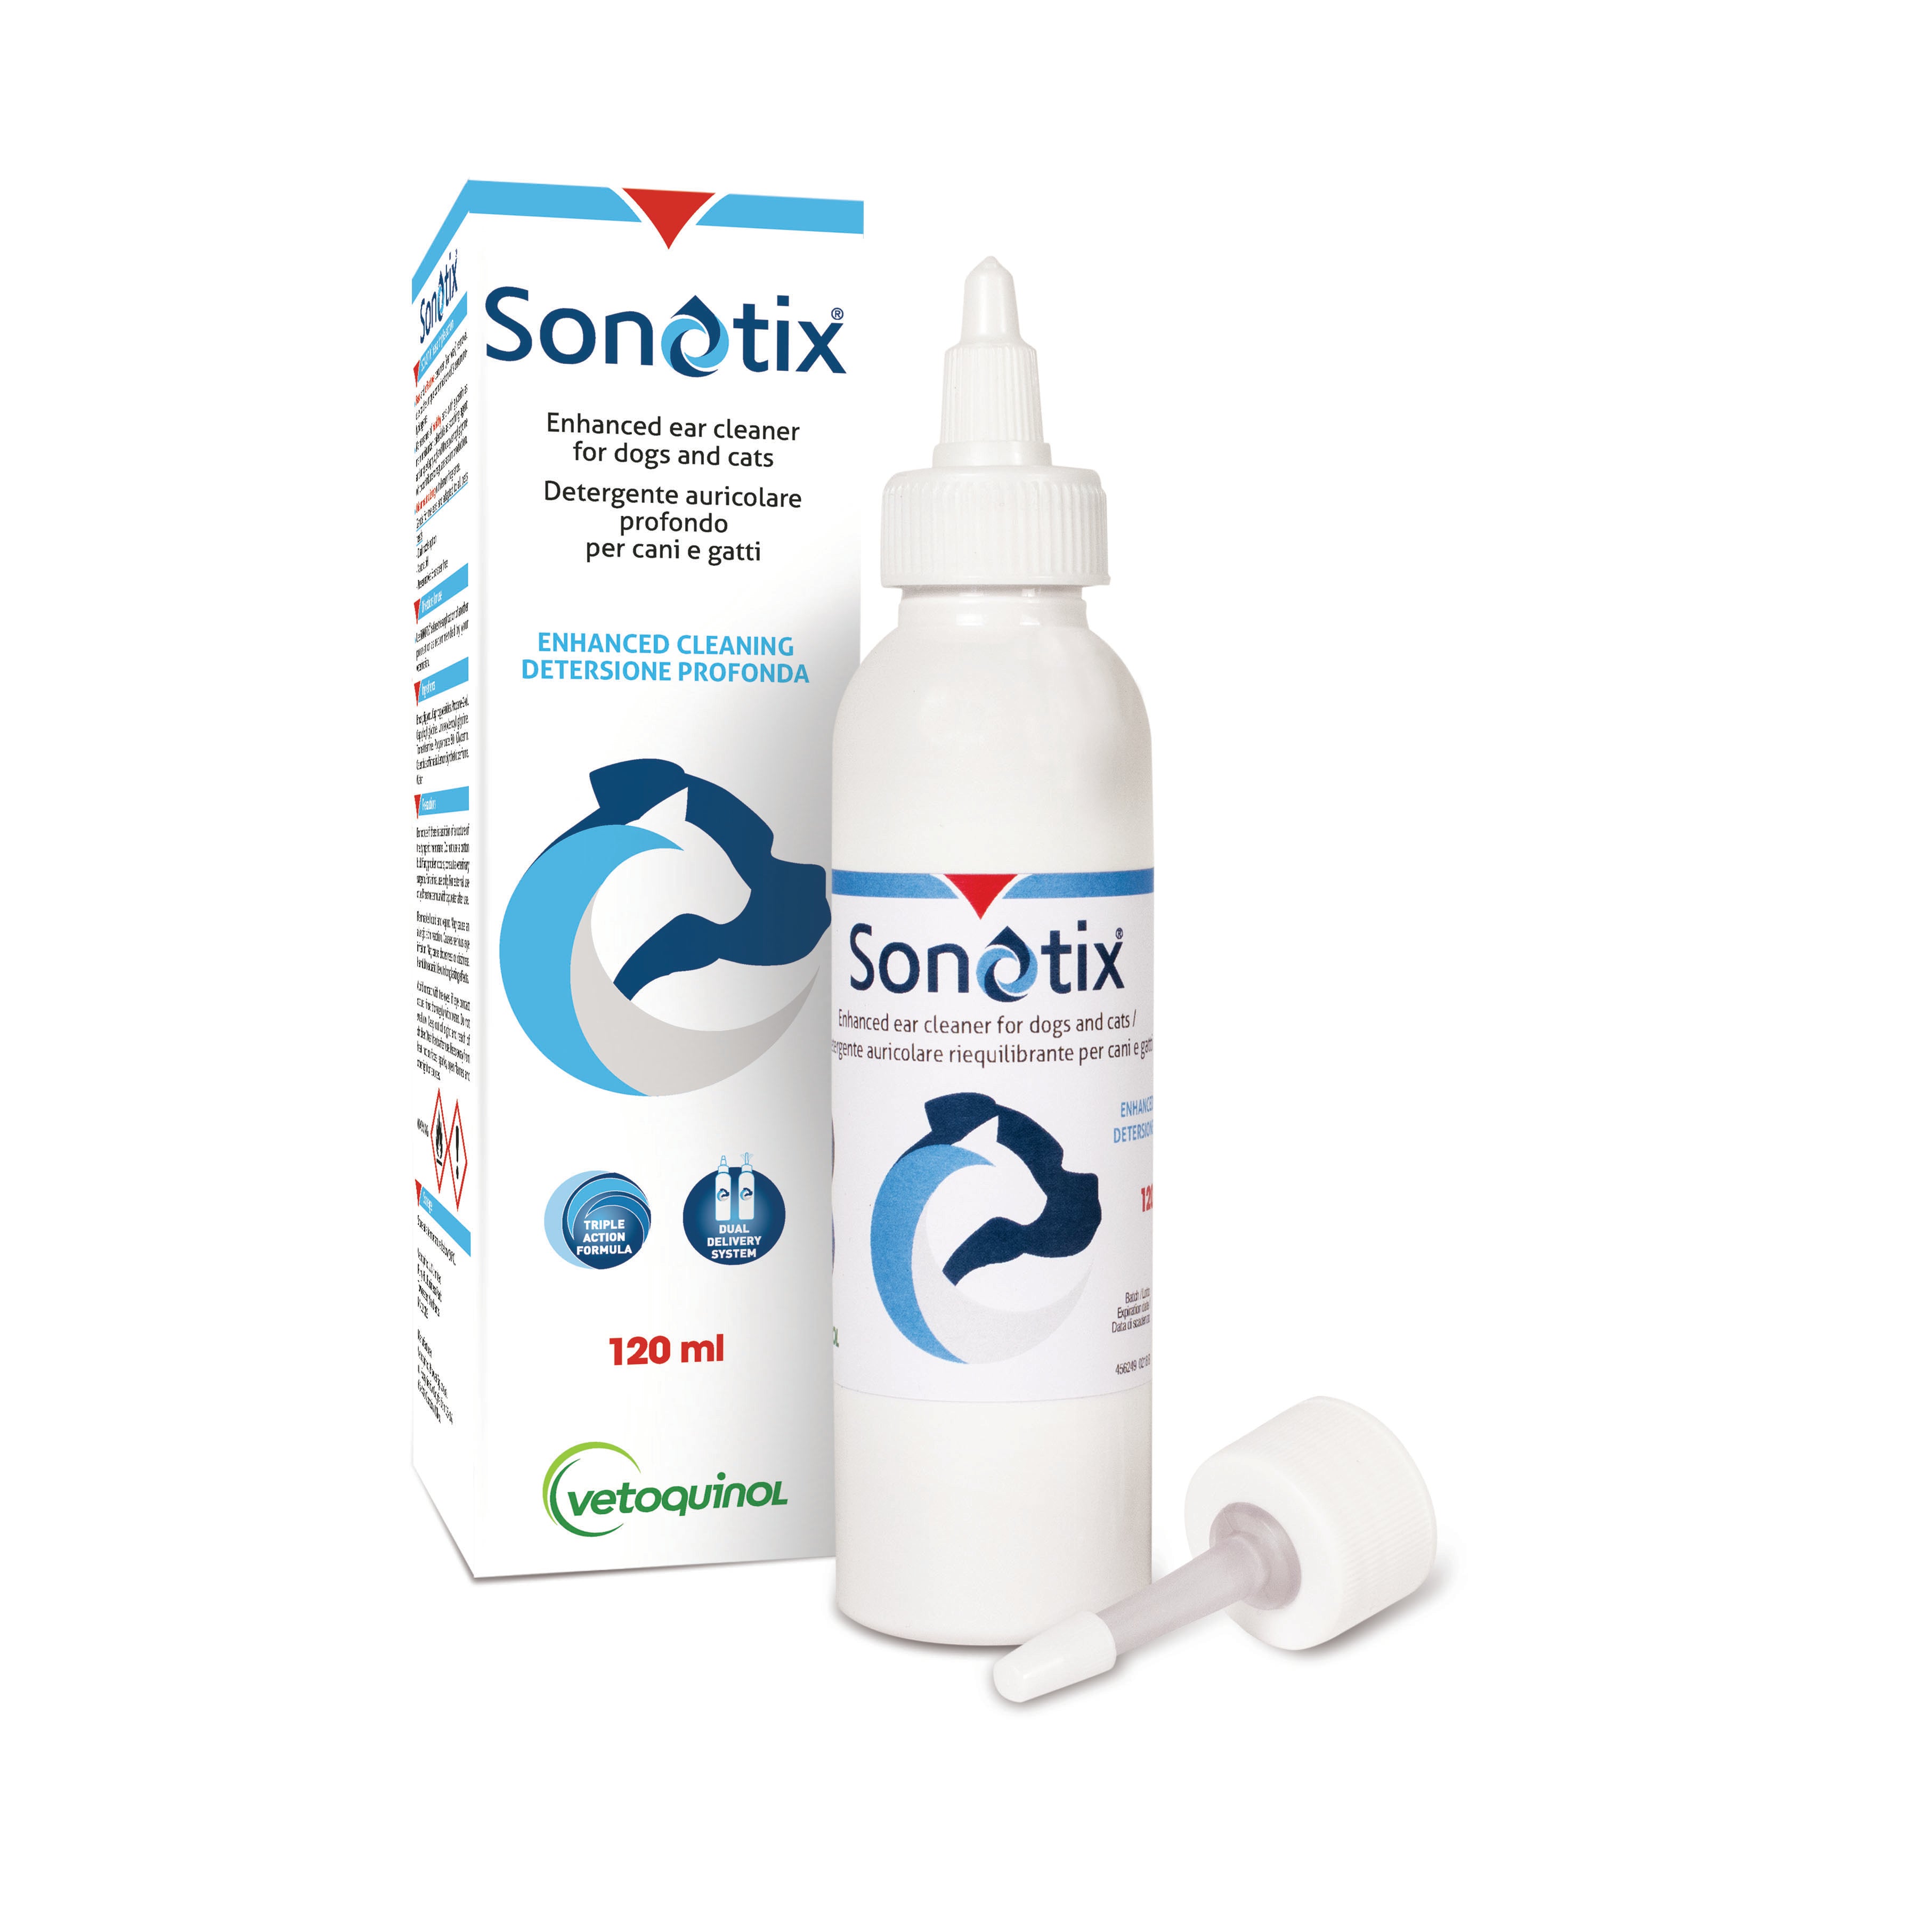 Sonotix detergente auricolare profondo per cani e gatti